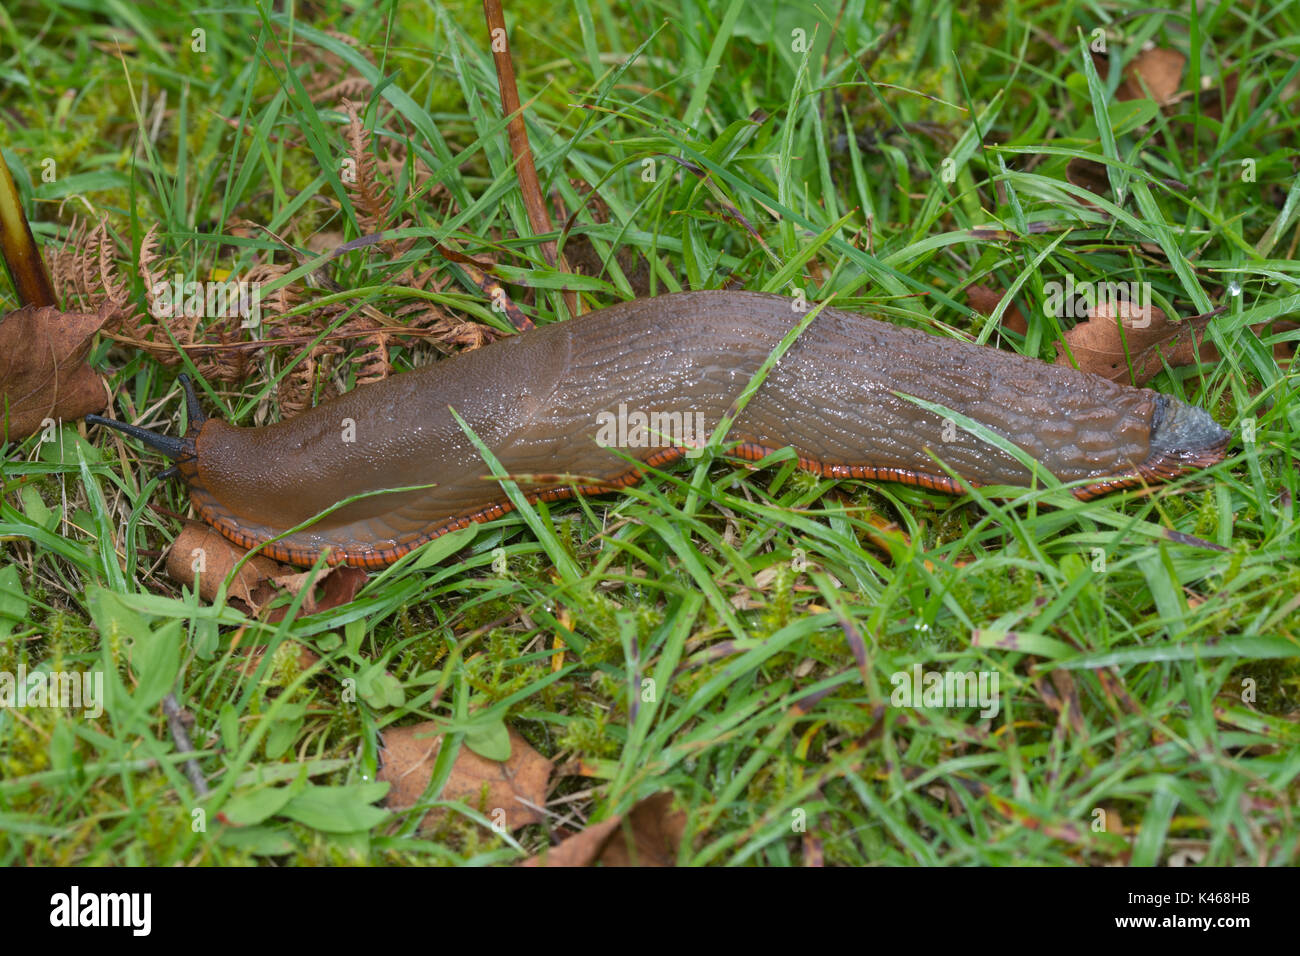 In der Nähe von großen braunen Slug mit orange Fuß - Fringe (Arion ater Rufus) Stockfoto